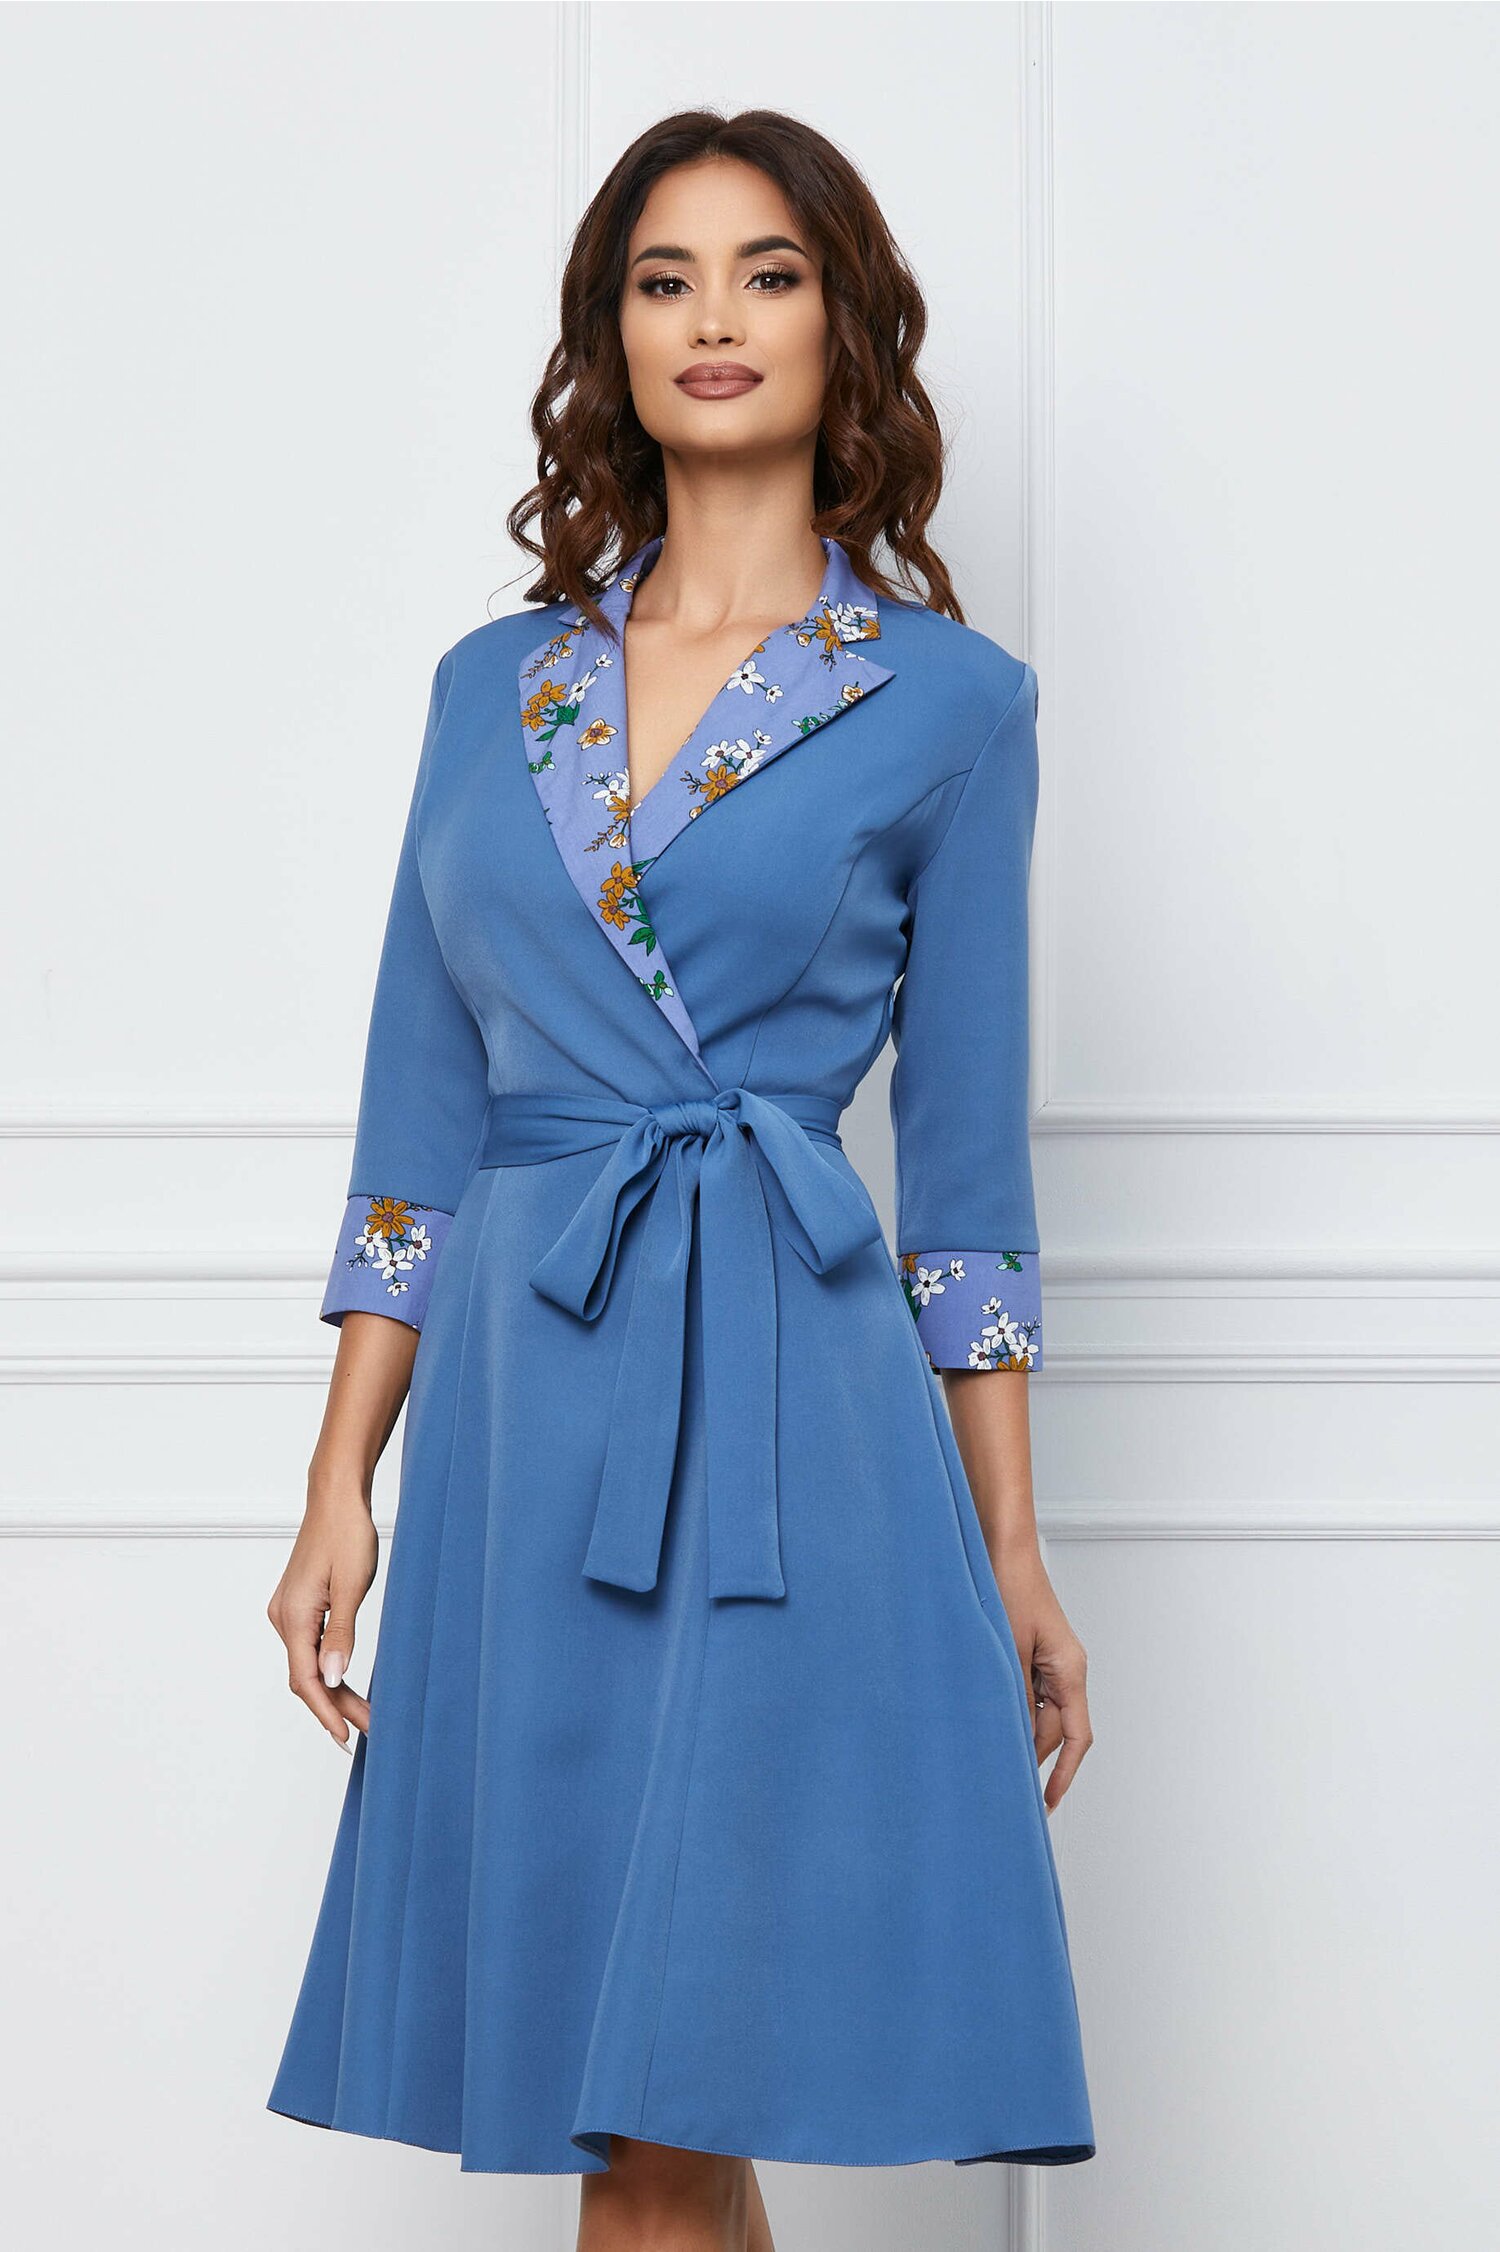 Rochie Dy Fashion bleu cu imprimeu floral pe rever si cordon in talie Bleu imagine megaplaza.ro